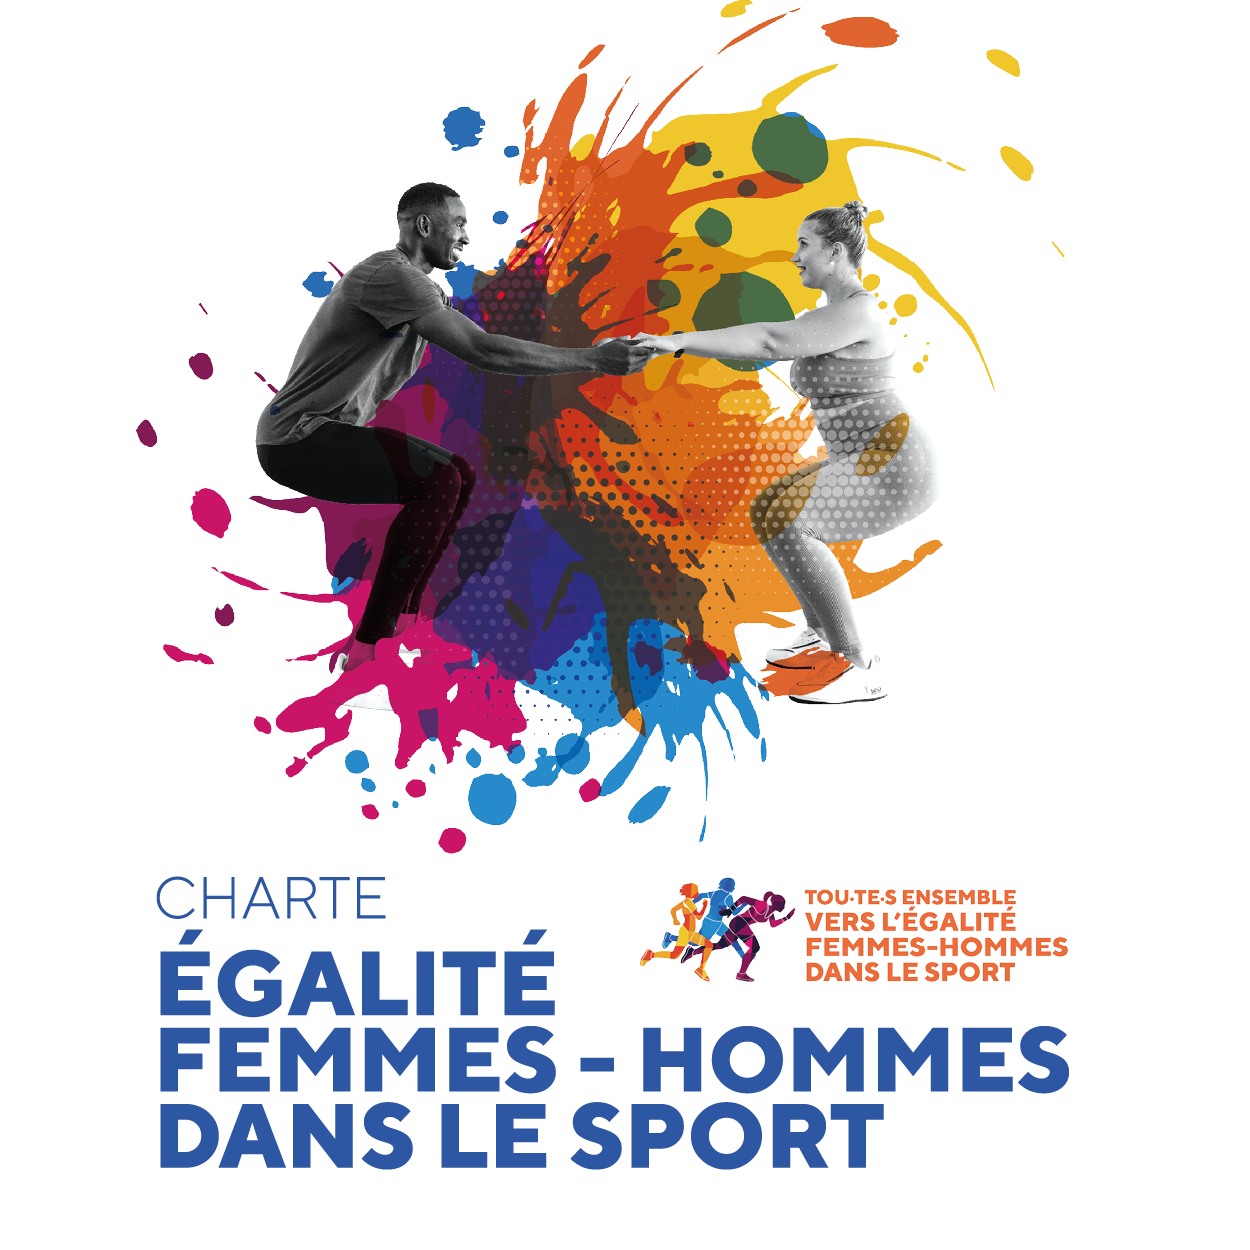 Workshop “Together towards equality in sport”